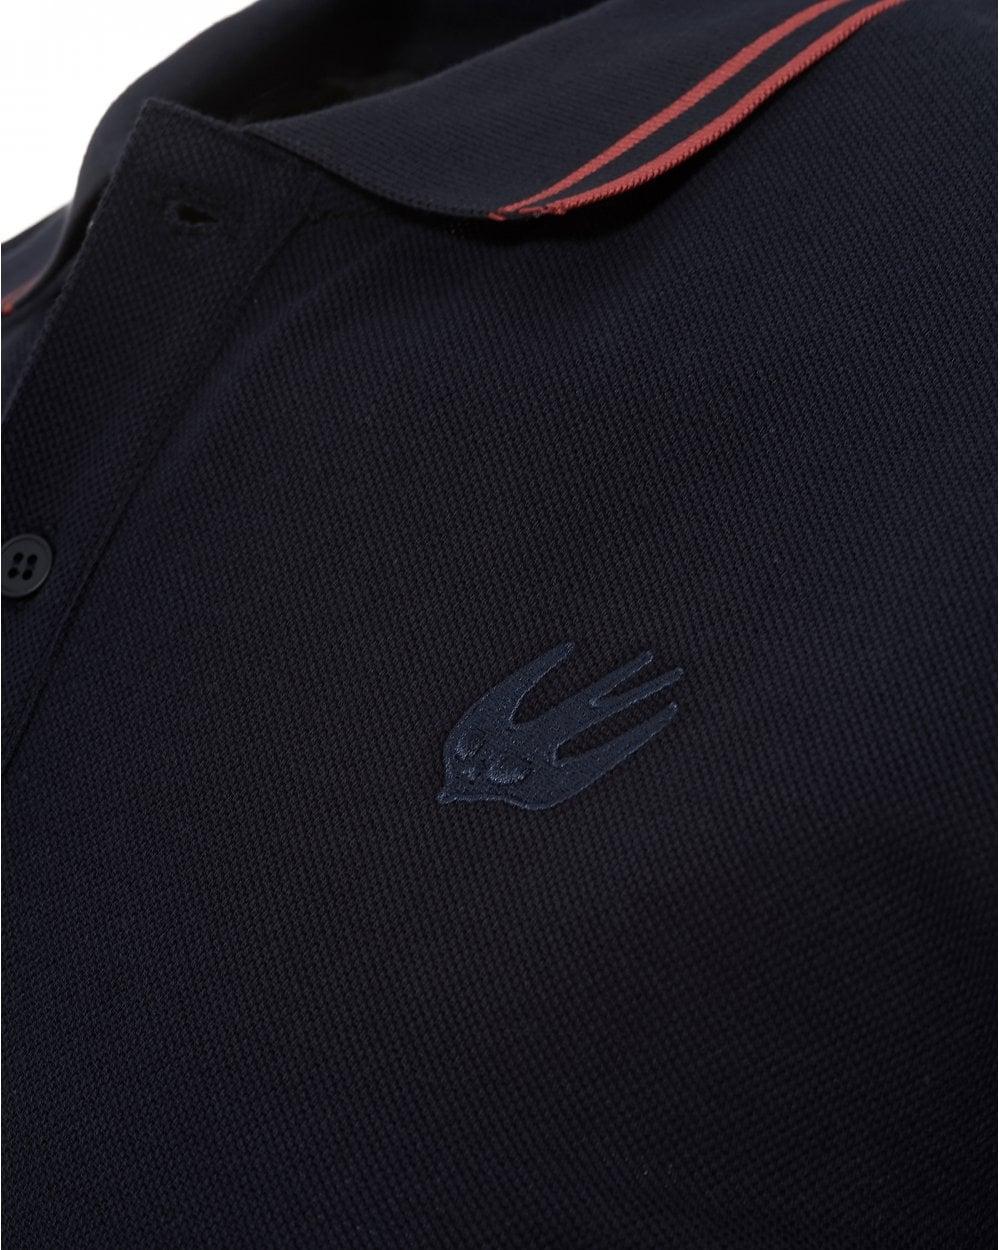 Red Polo Logo - McQ by Alexander McQueen Mens Swallow Logo Deep Navy Red Polo Shirt